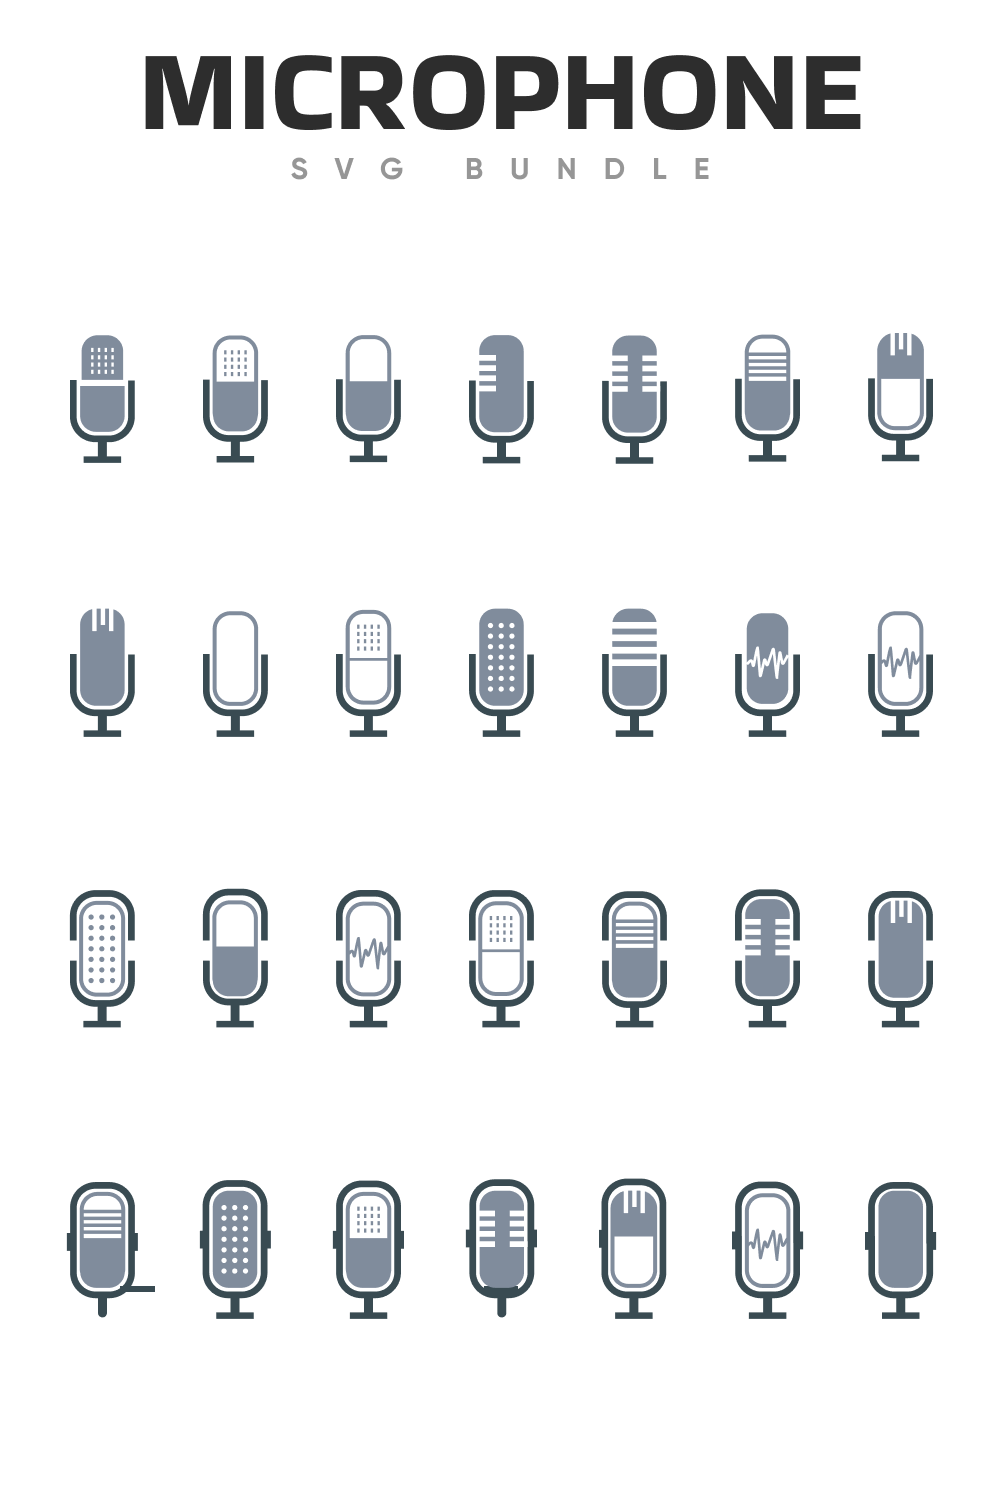 Big microphones set in grey.